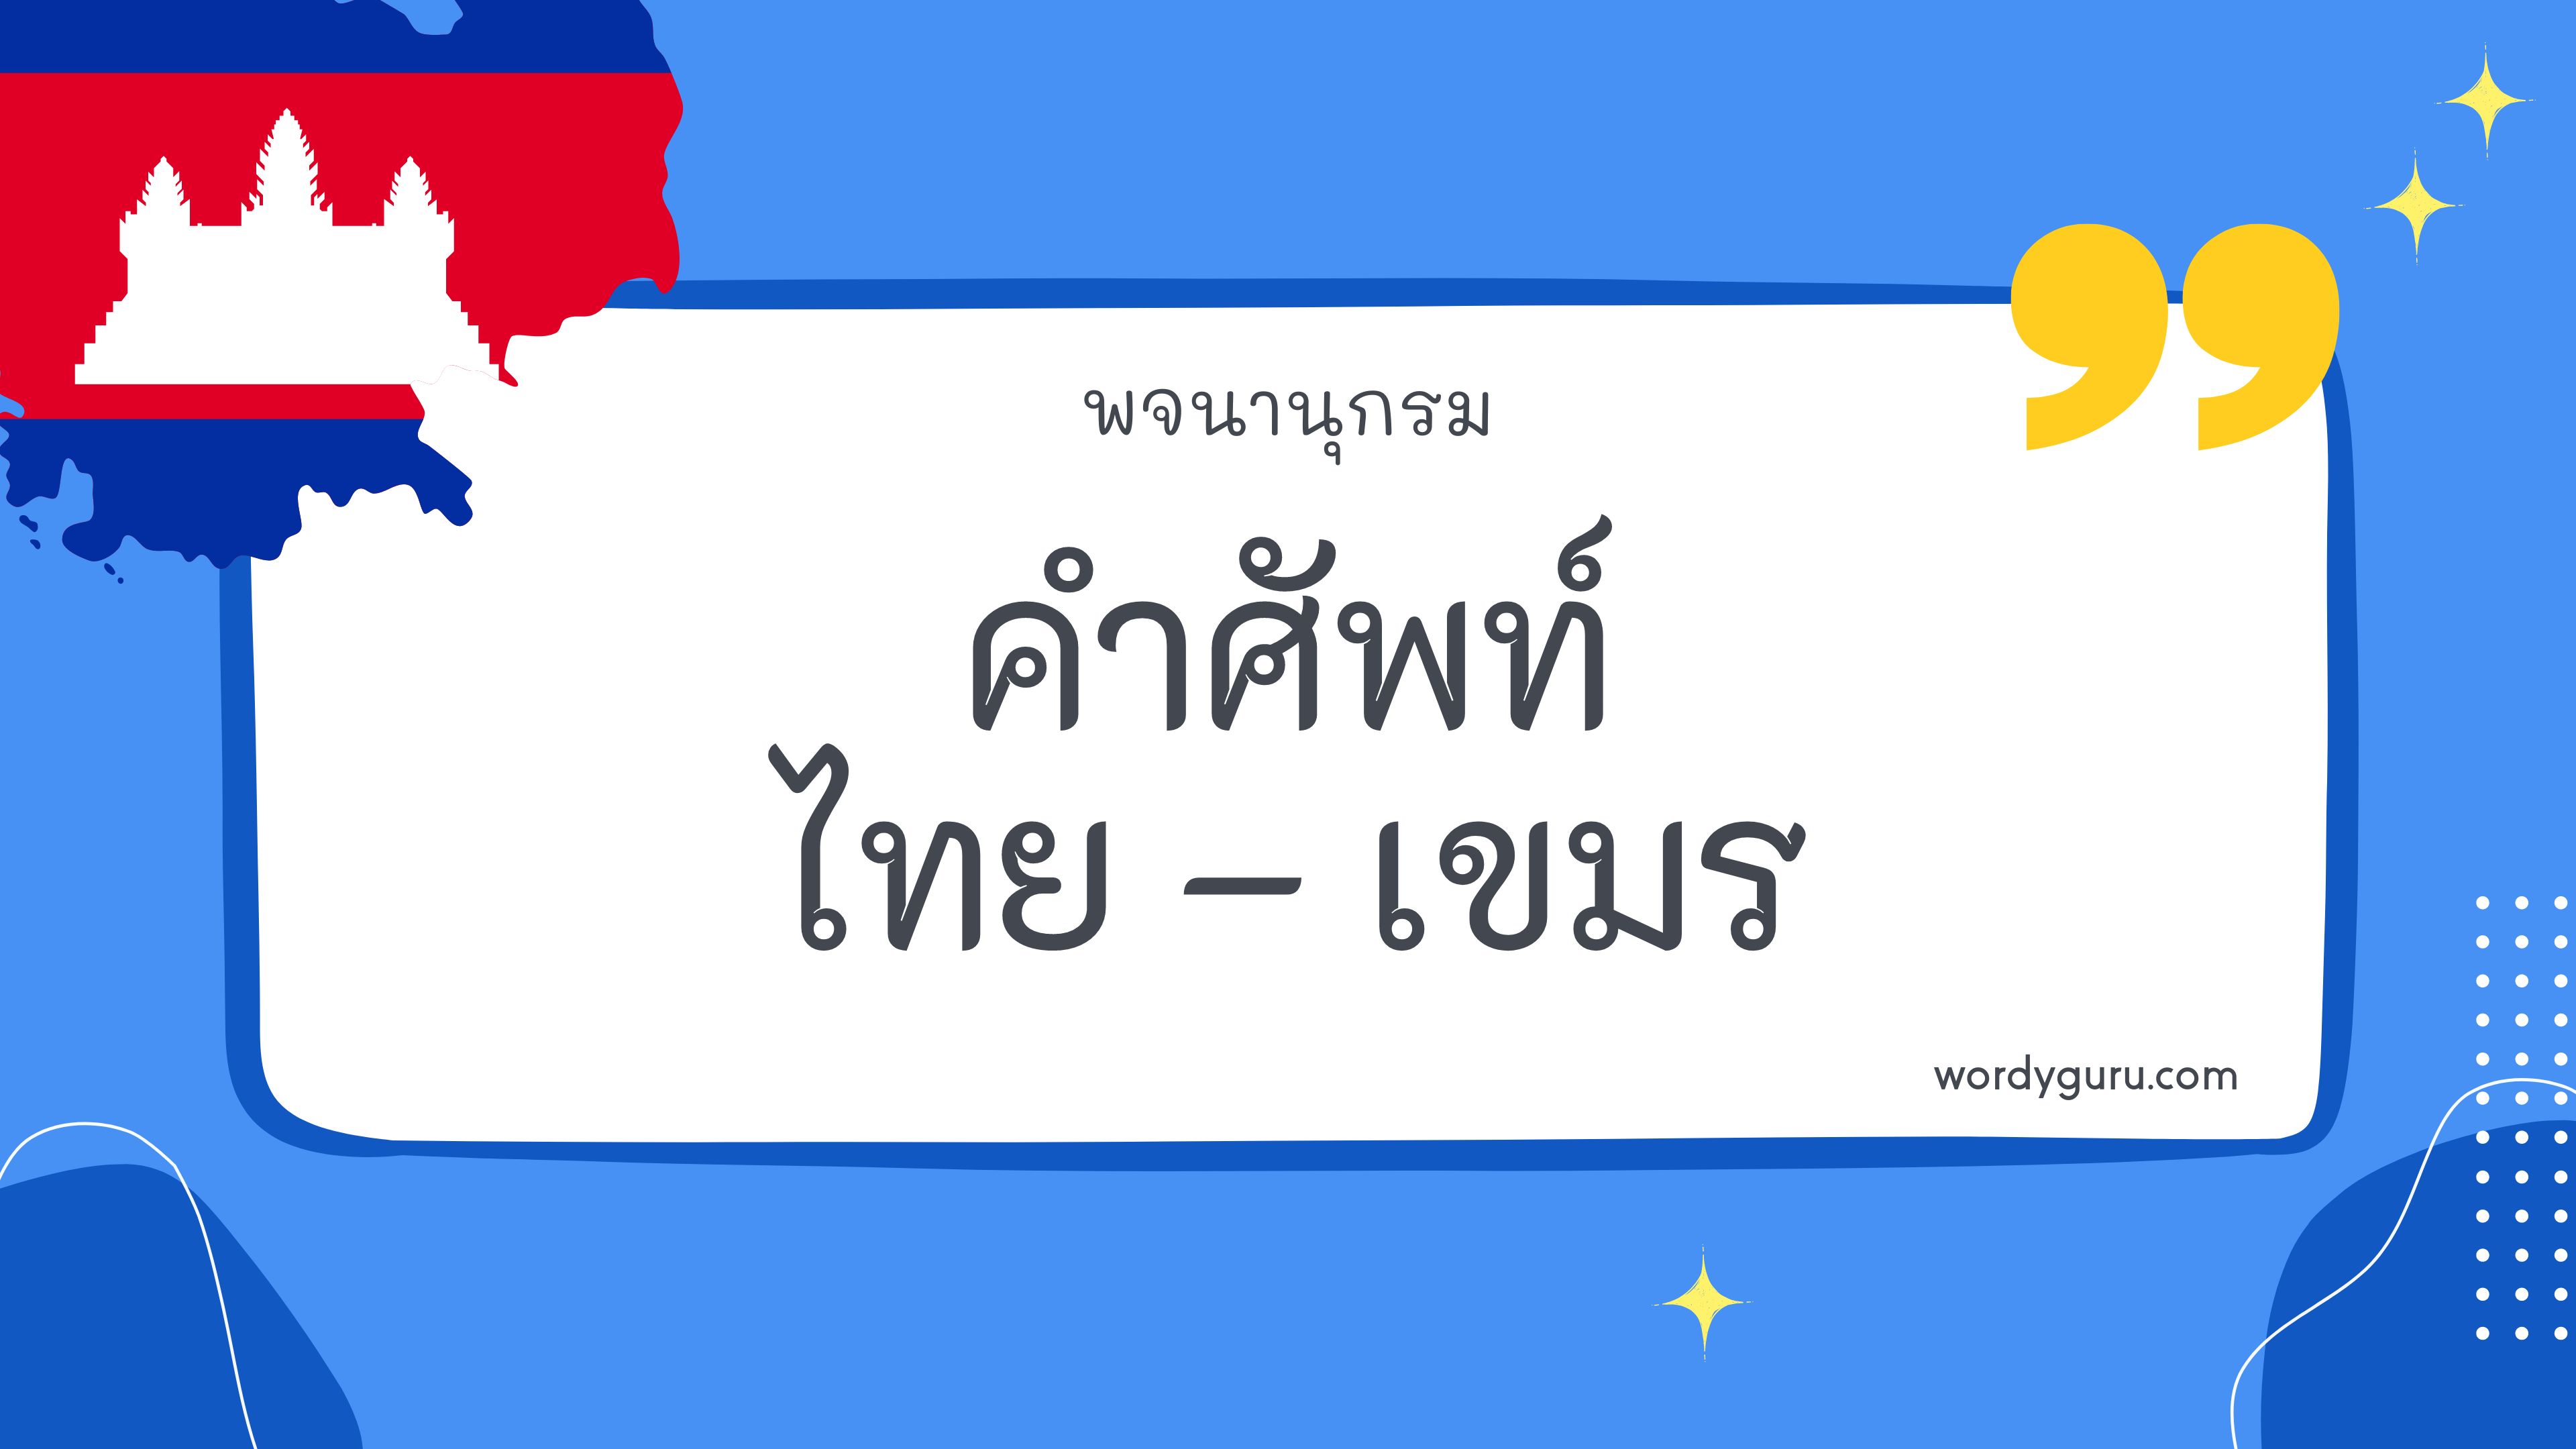 คำศัพท์ภาษาไทย - เขมร 200 คำ ที่นิยมใช้ พบเห็นบ่อย ในชีวิตประจำวัน